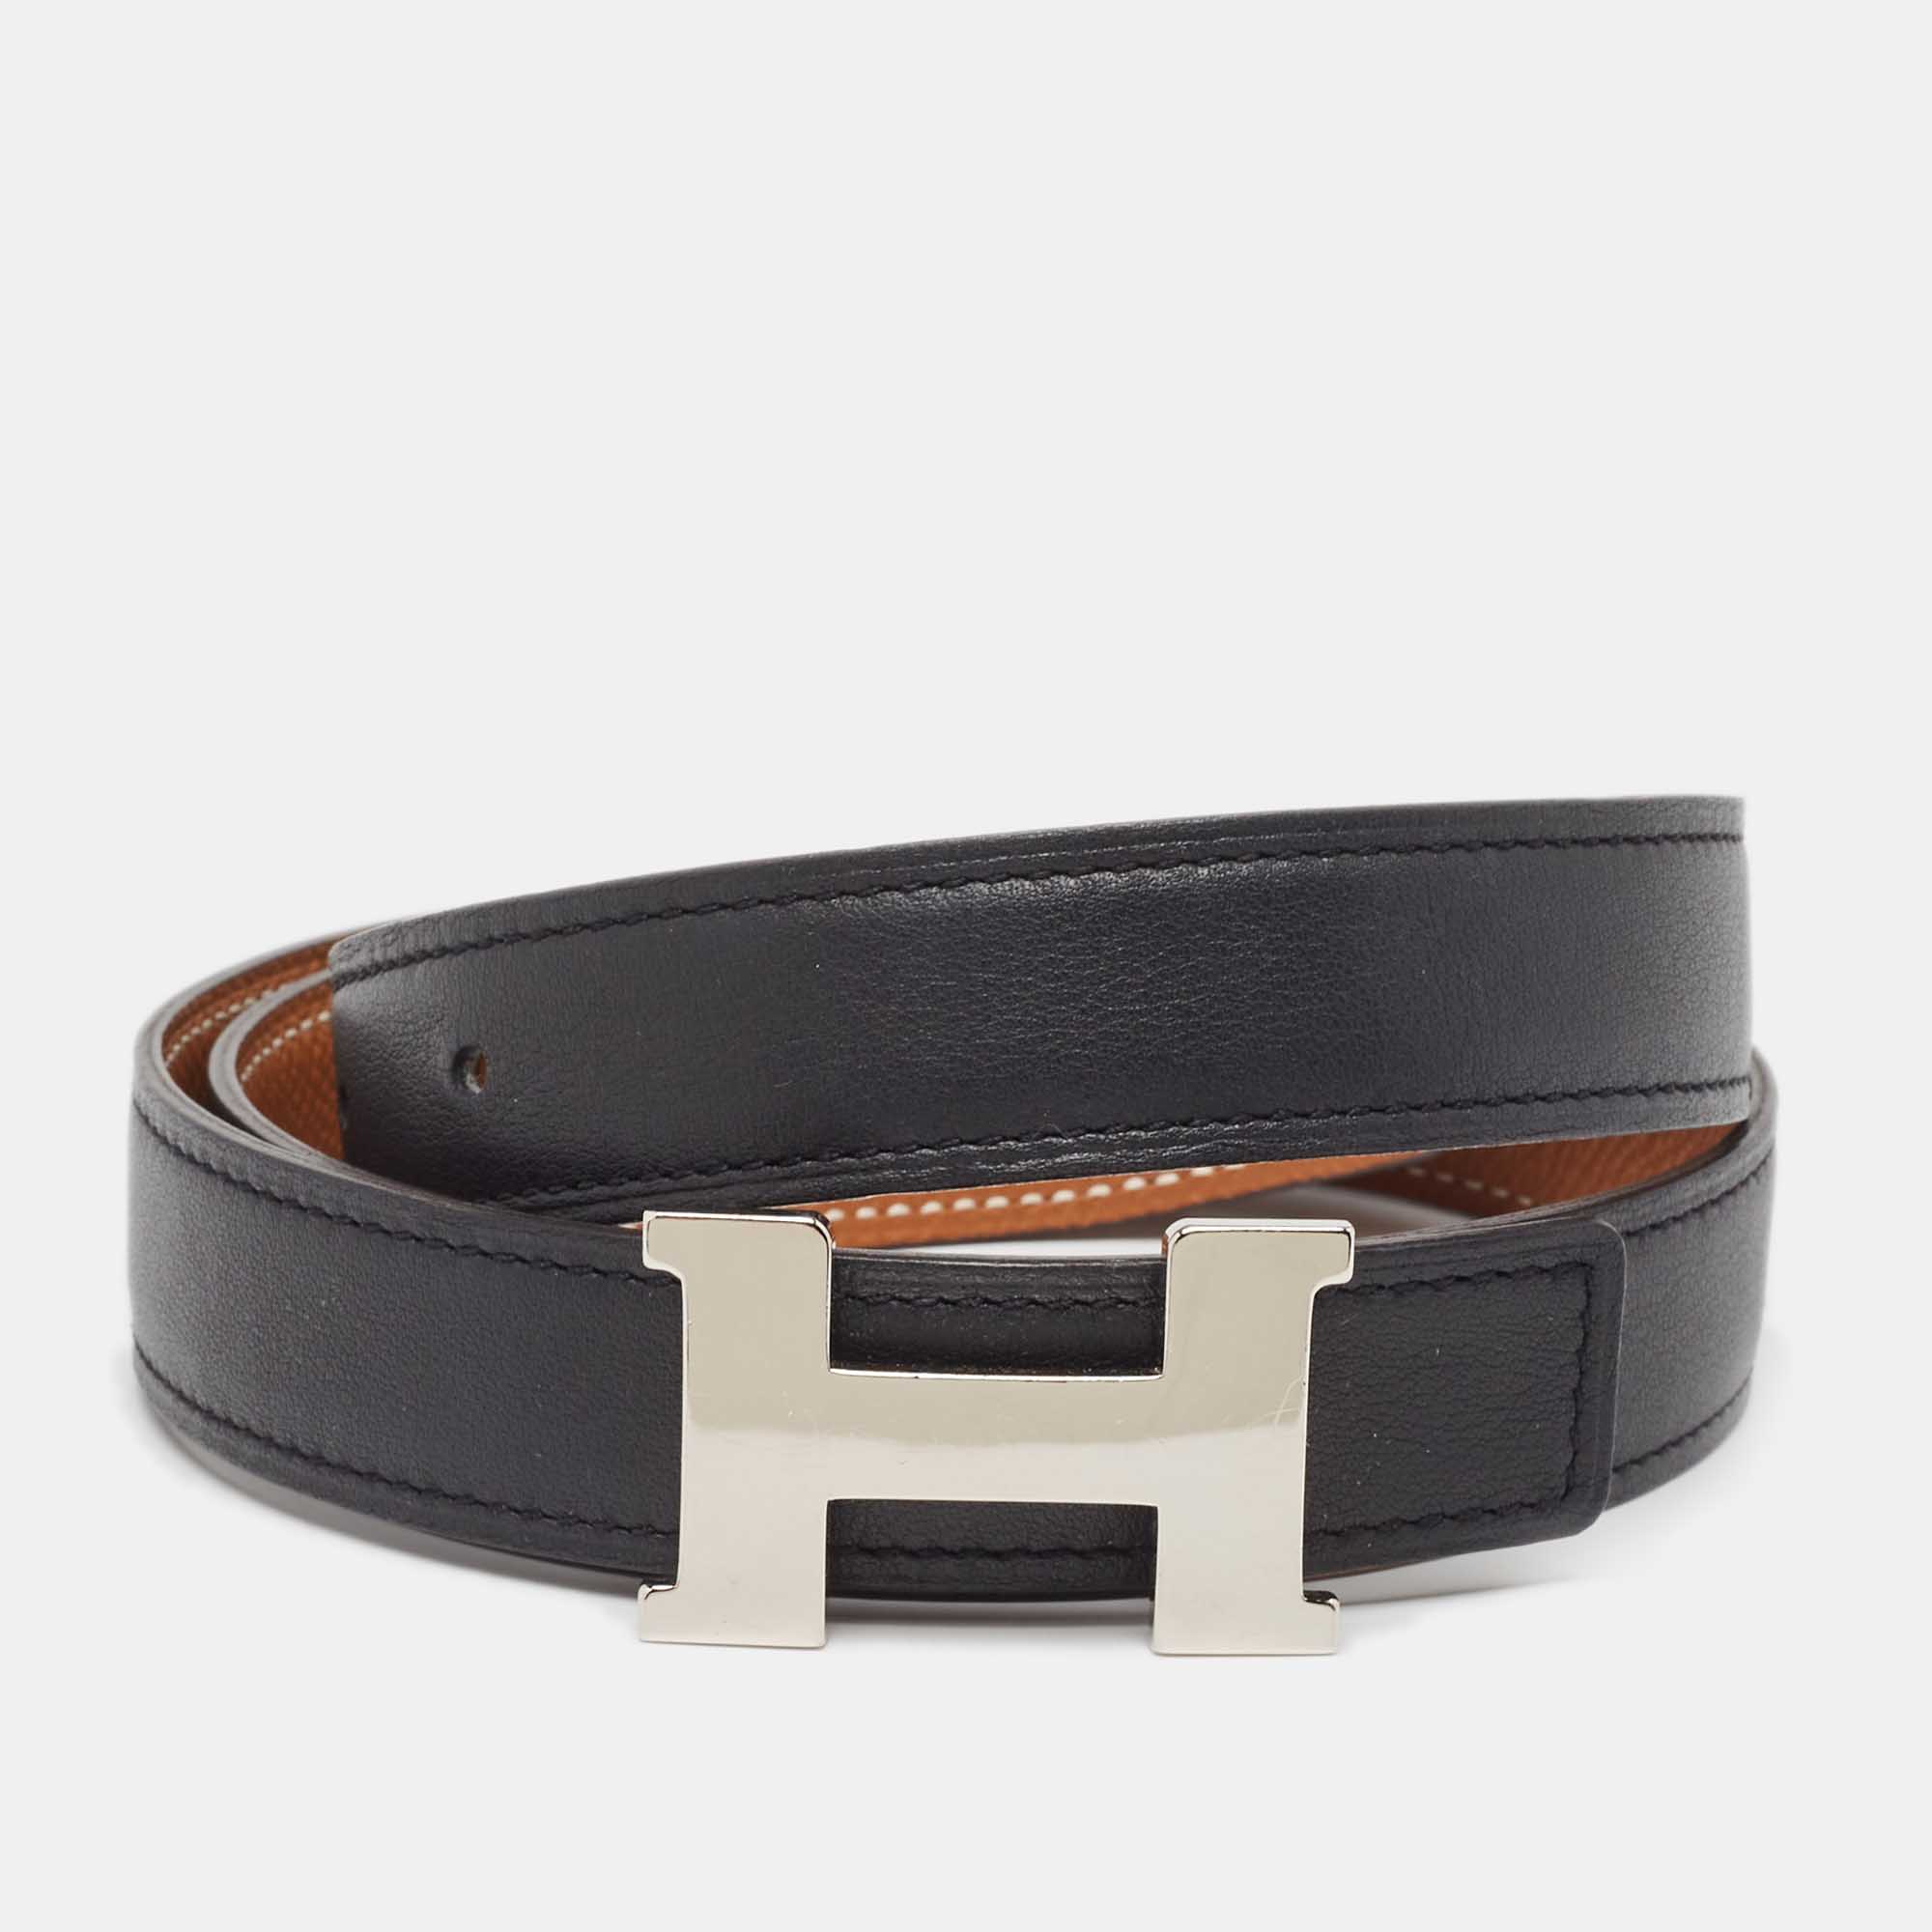 Hermes noir/gold swift and epsom leather constance reversible belt 80 cm